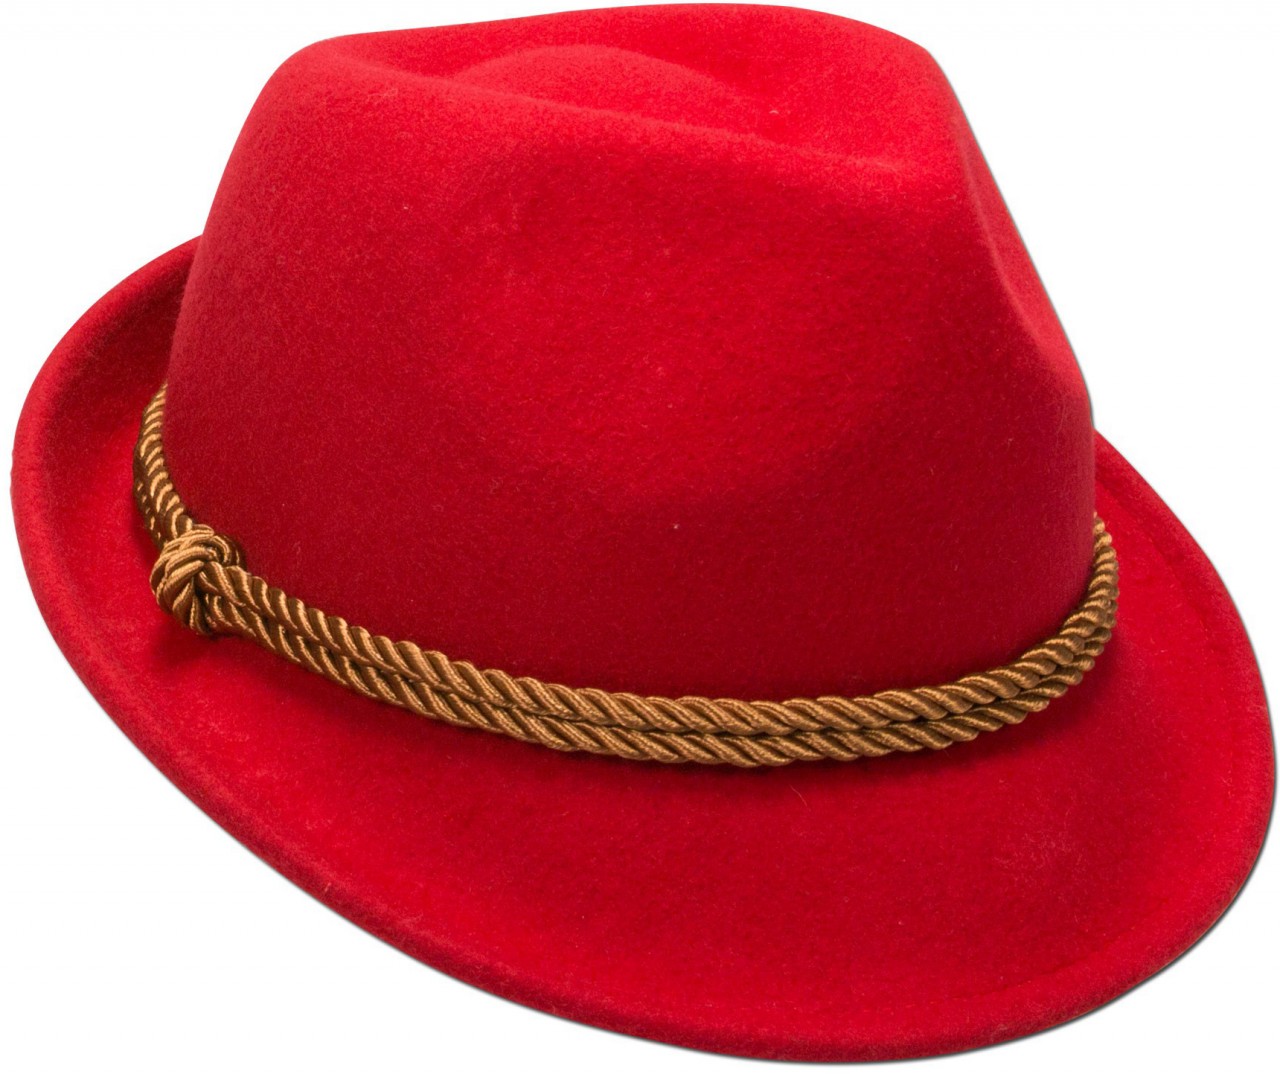 Vilten hoed Ronja rood